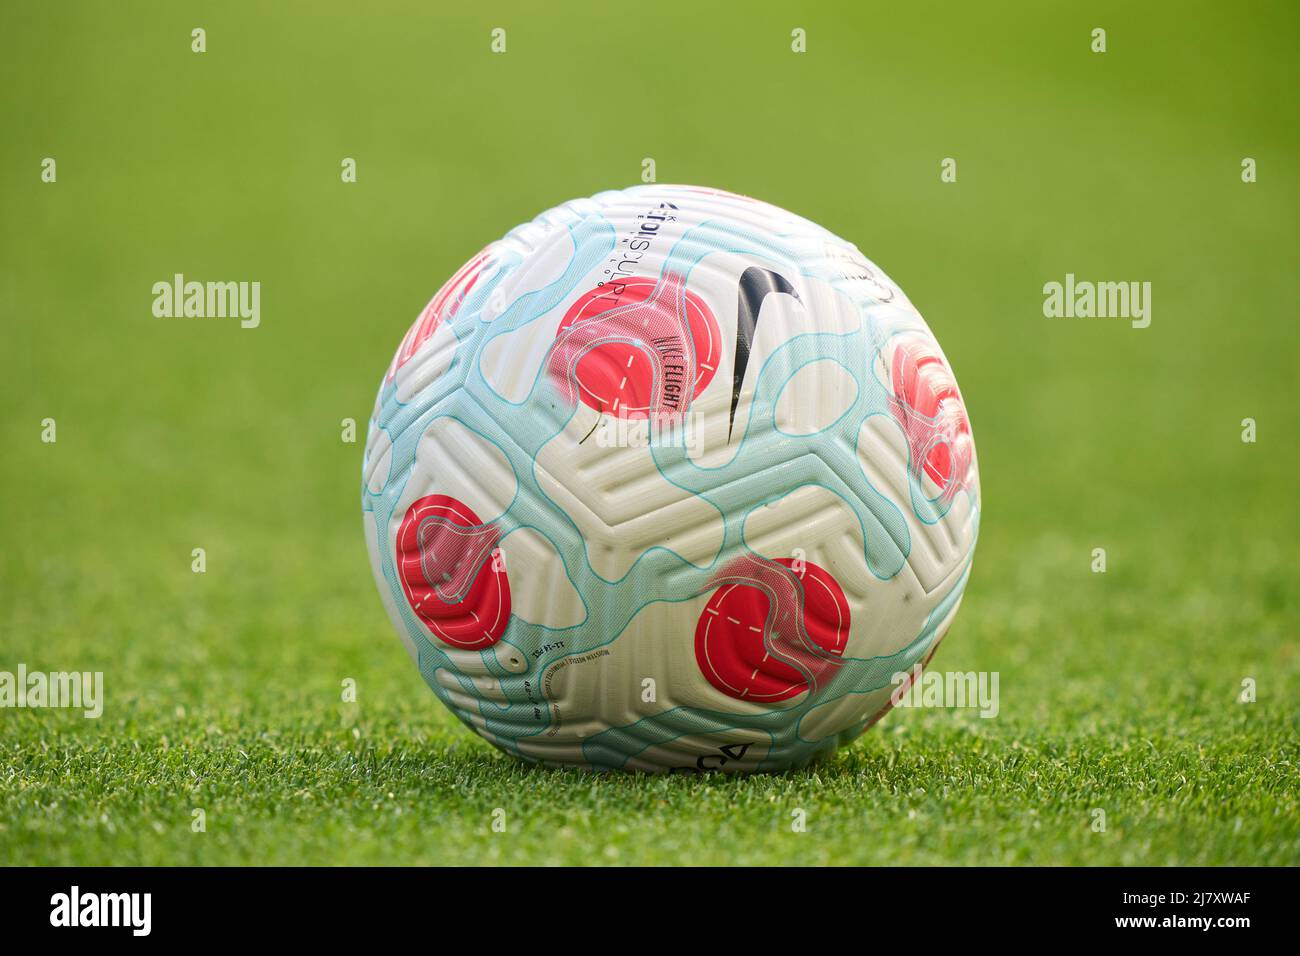 61,674 Premier League Ball Images, Stock Photos, 3D objects, & Vectors